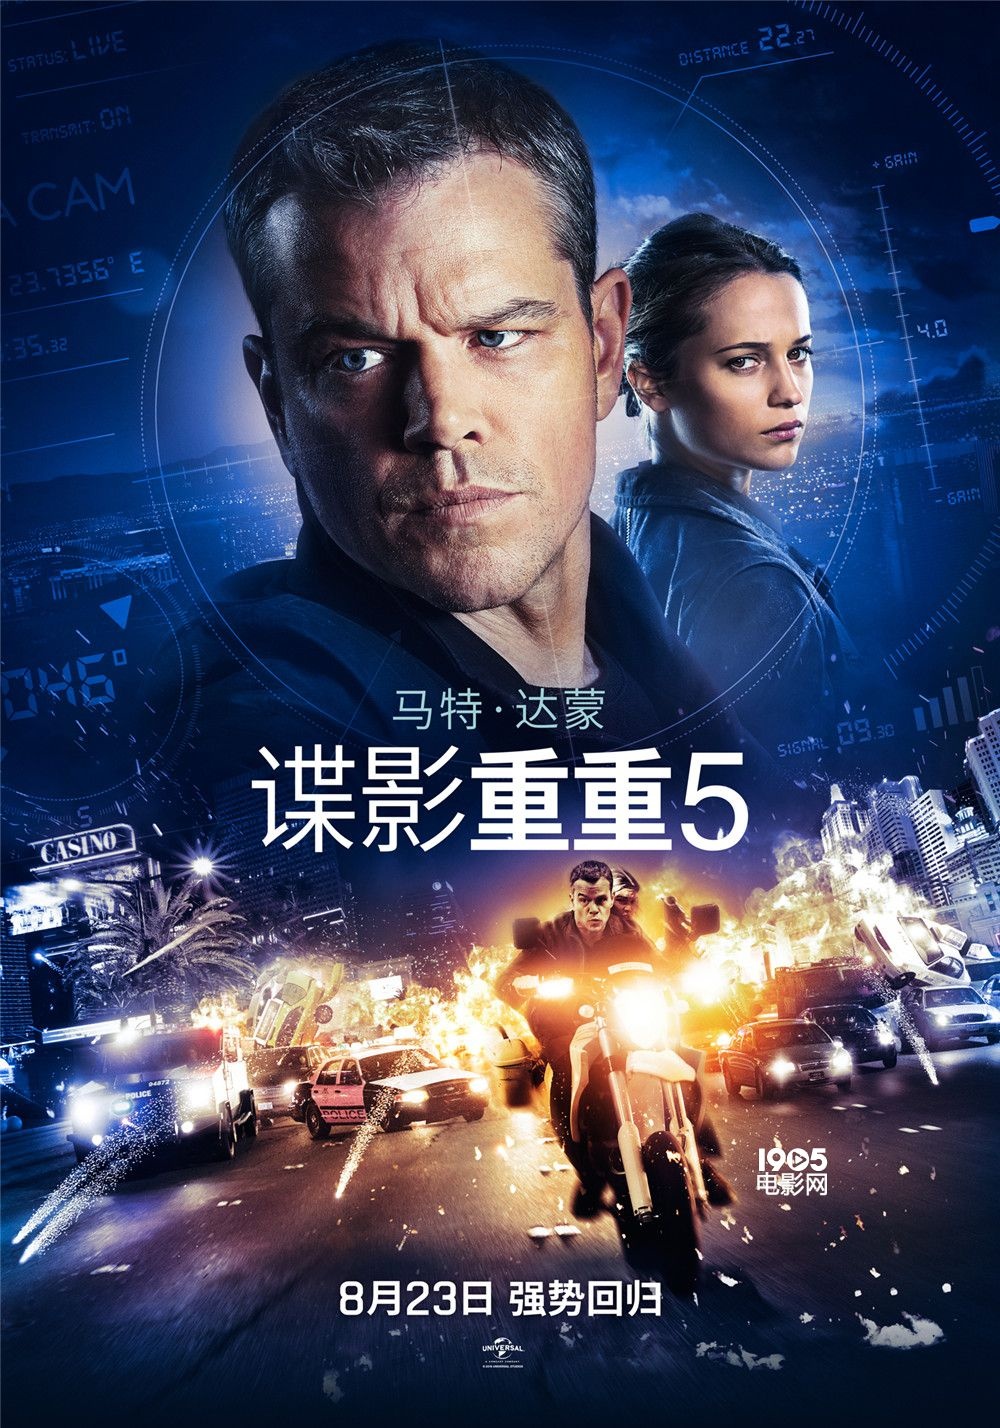 《谍影重重5》票房成绩优异 8月23日登中国银幕